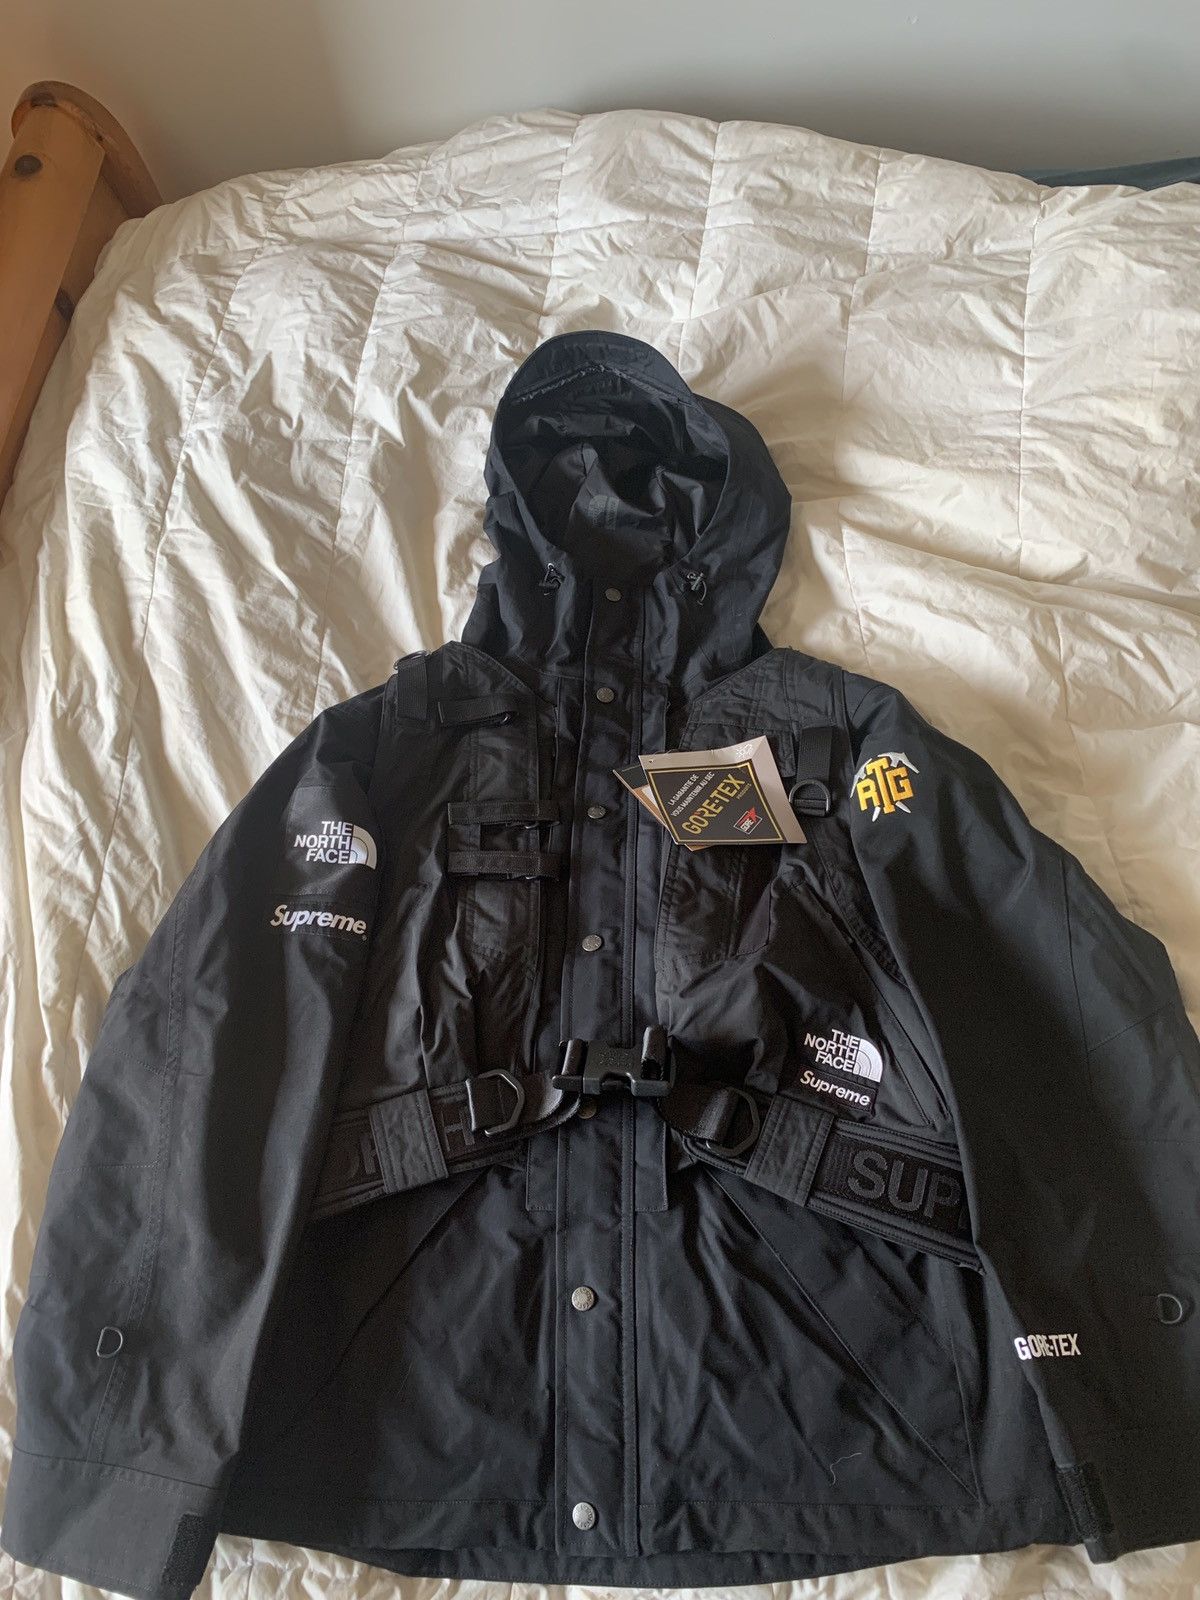 Supreme Supreme x The North Face RTG Jacket + Vest | Grailed